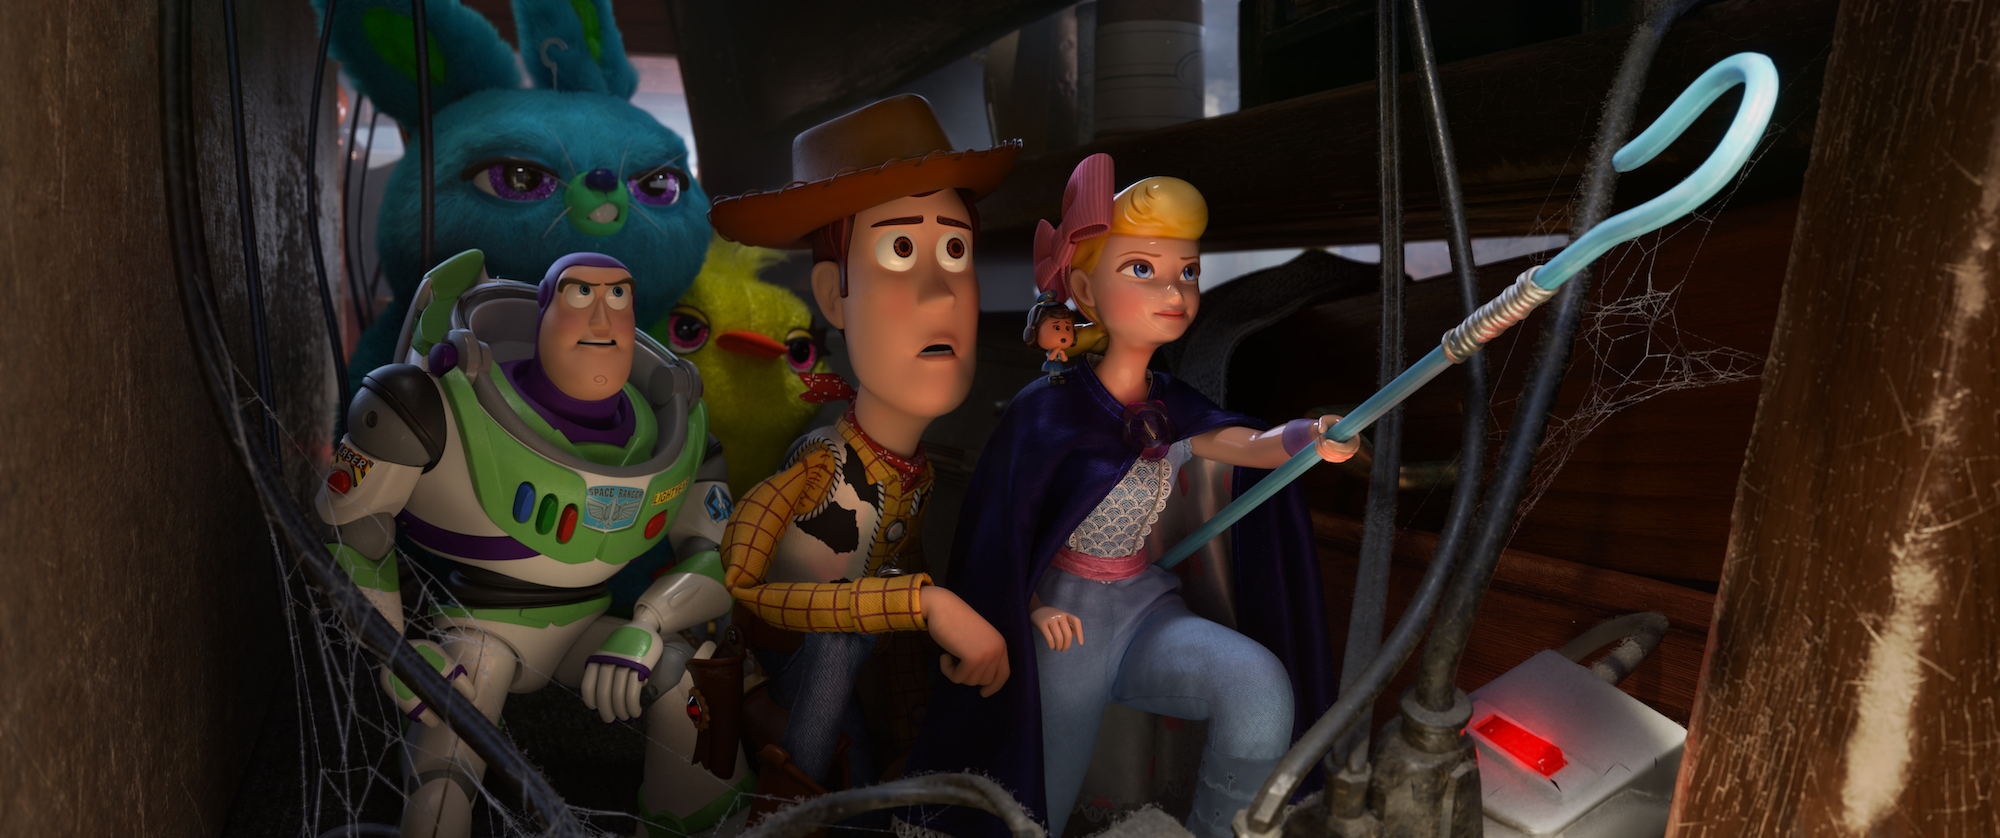 Nestler Schultüte Toy Story 4 